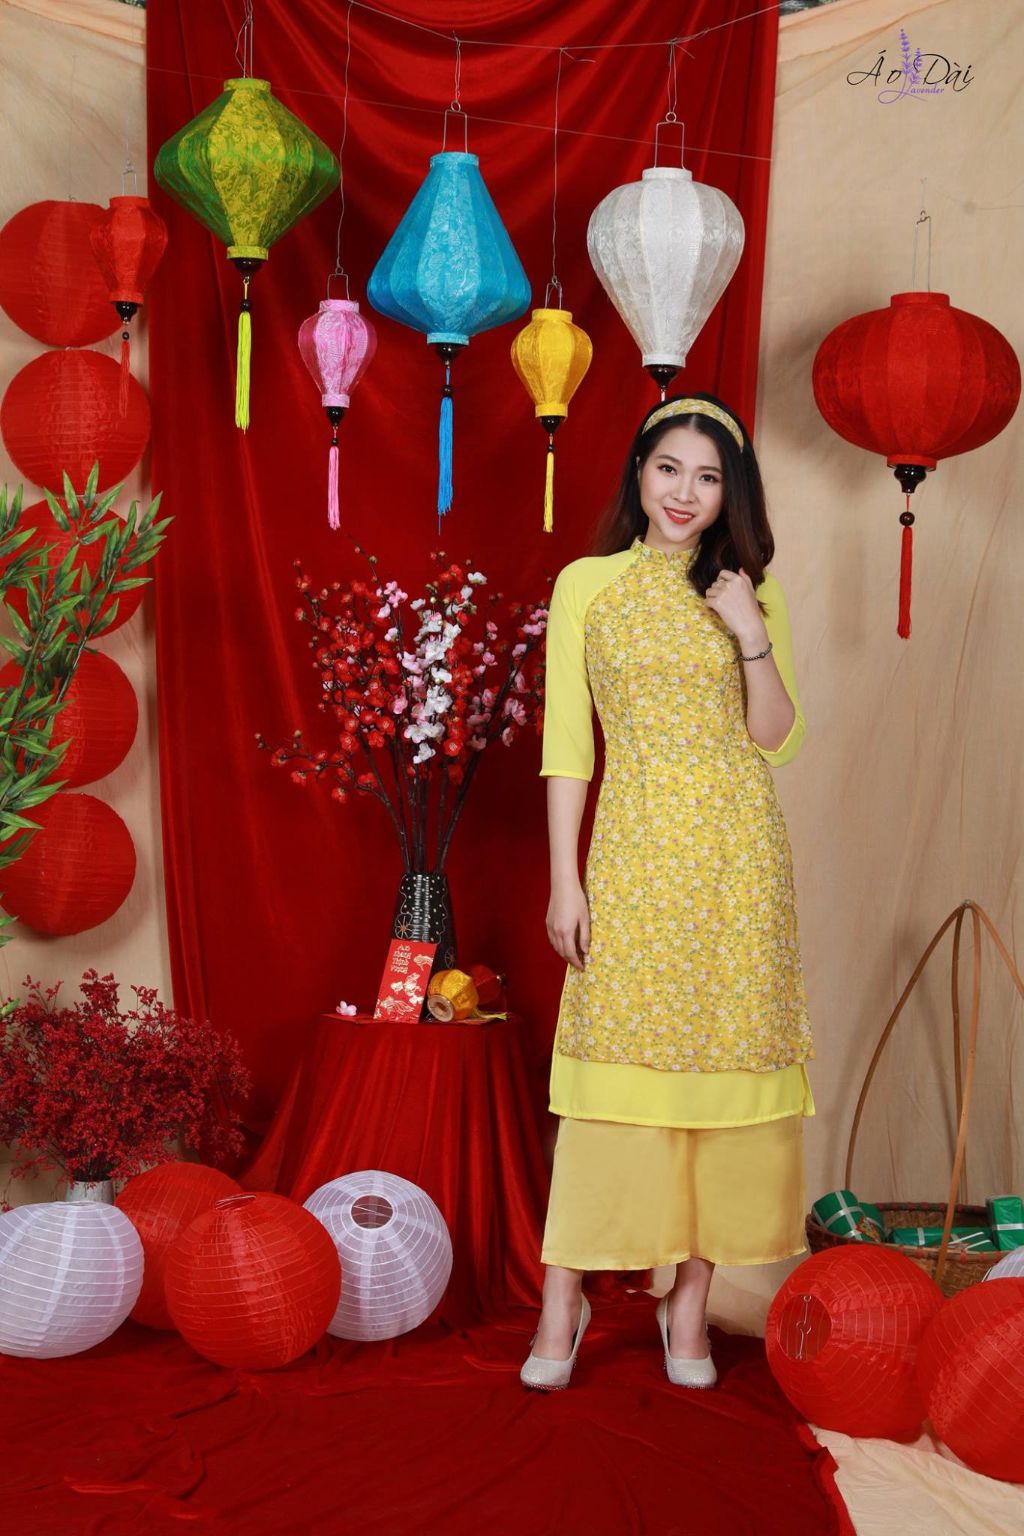 Các cửa hàng cho thuê áo dài ở Hà Nội, ngày nay đã biến tấu và thay đổi nhiều về kiểu dáng, màu sắc với những tông màu rực rỡ như cam, hồng, vàng, tím, trắng,…